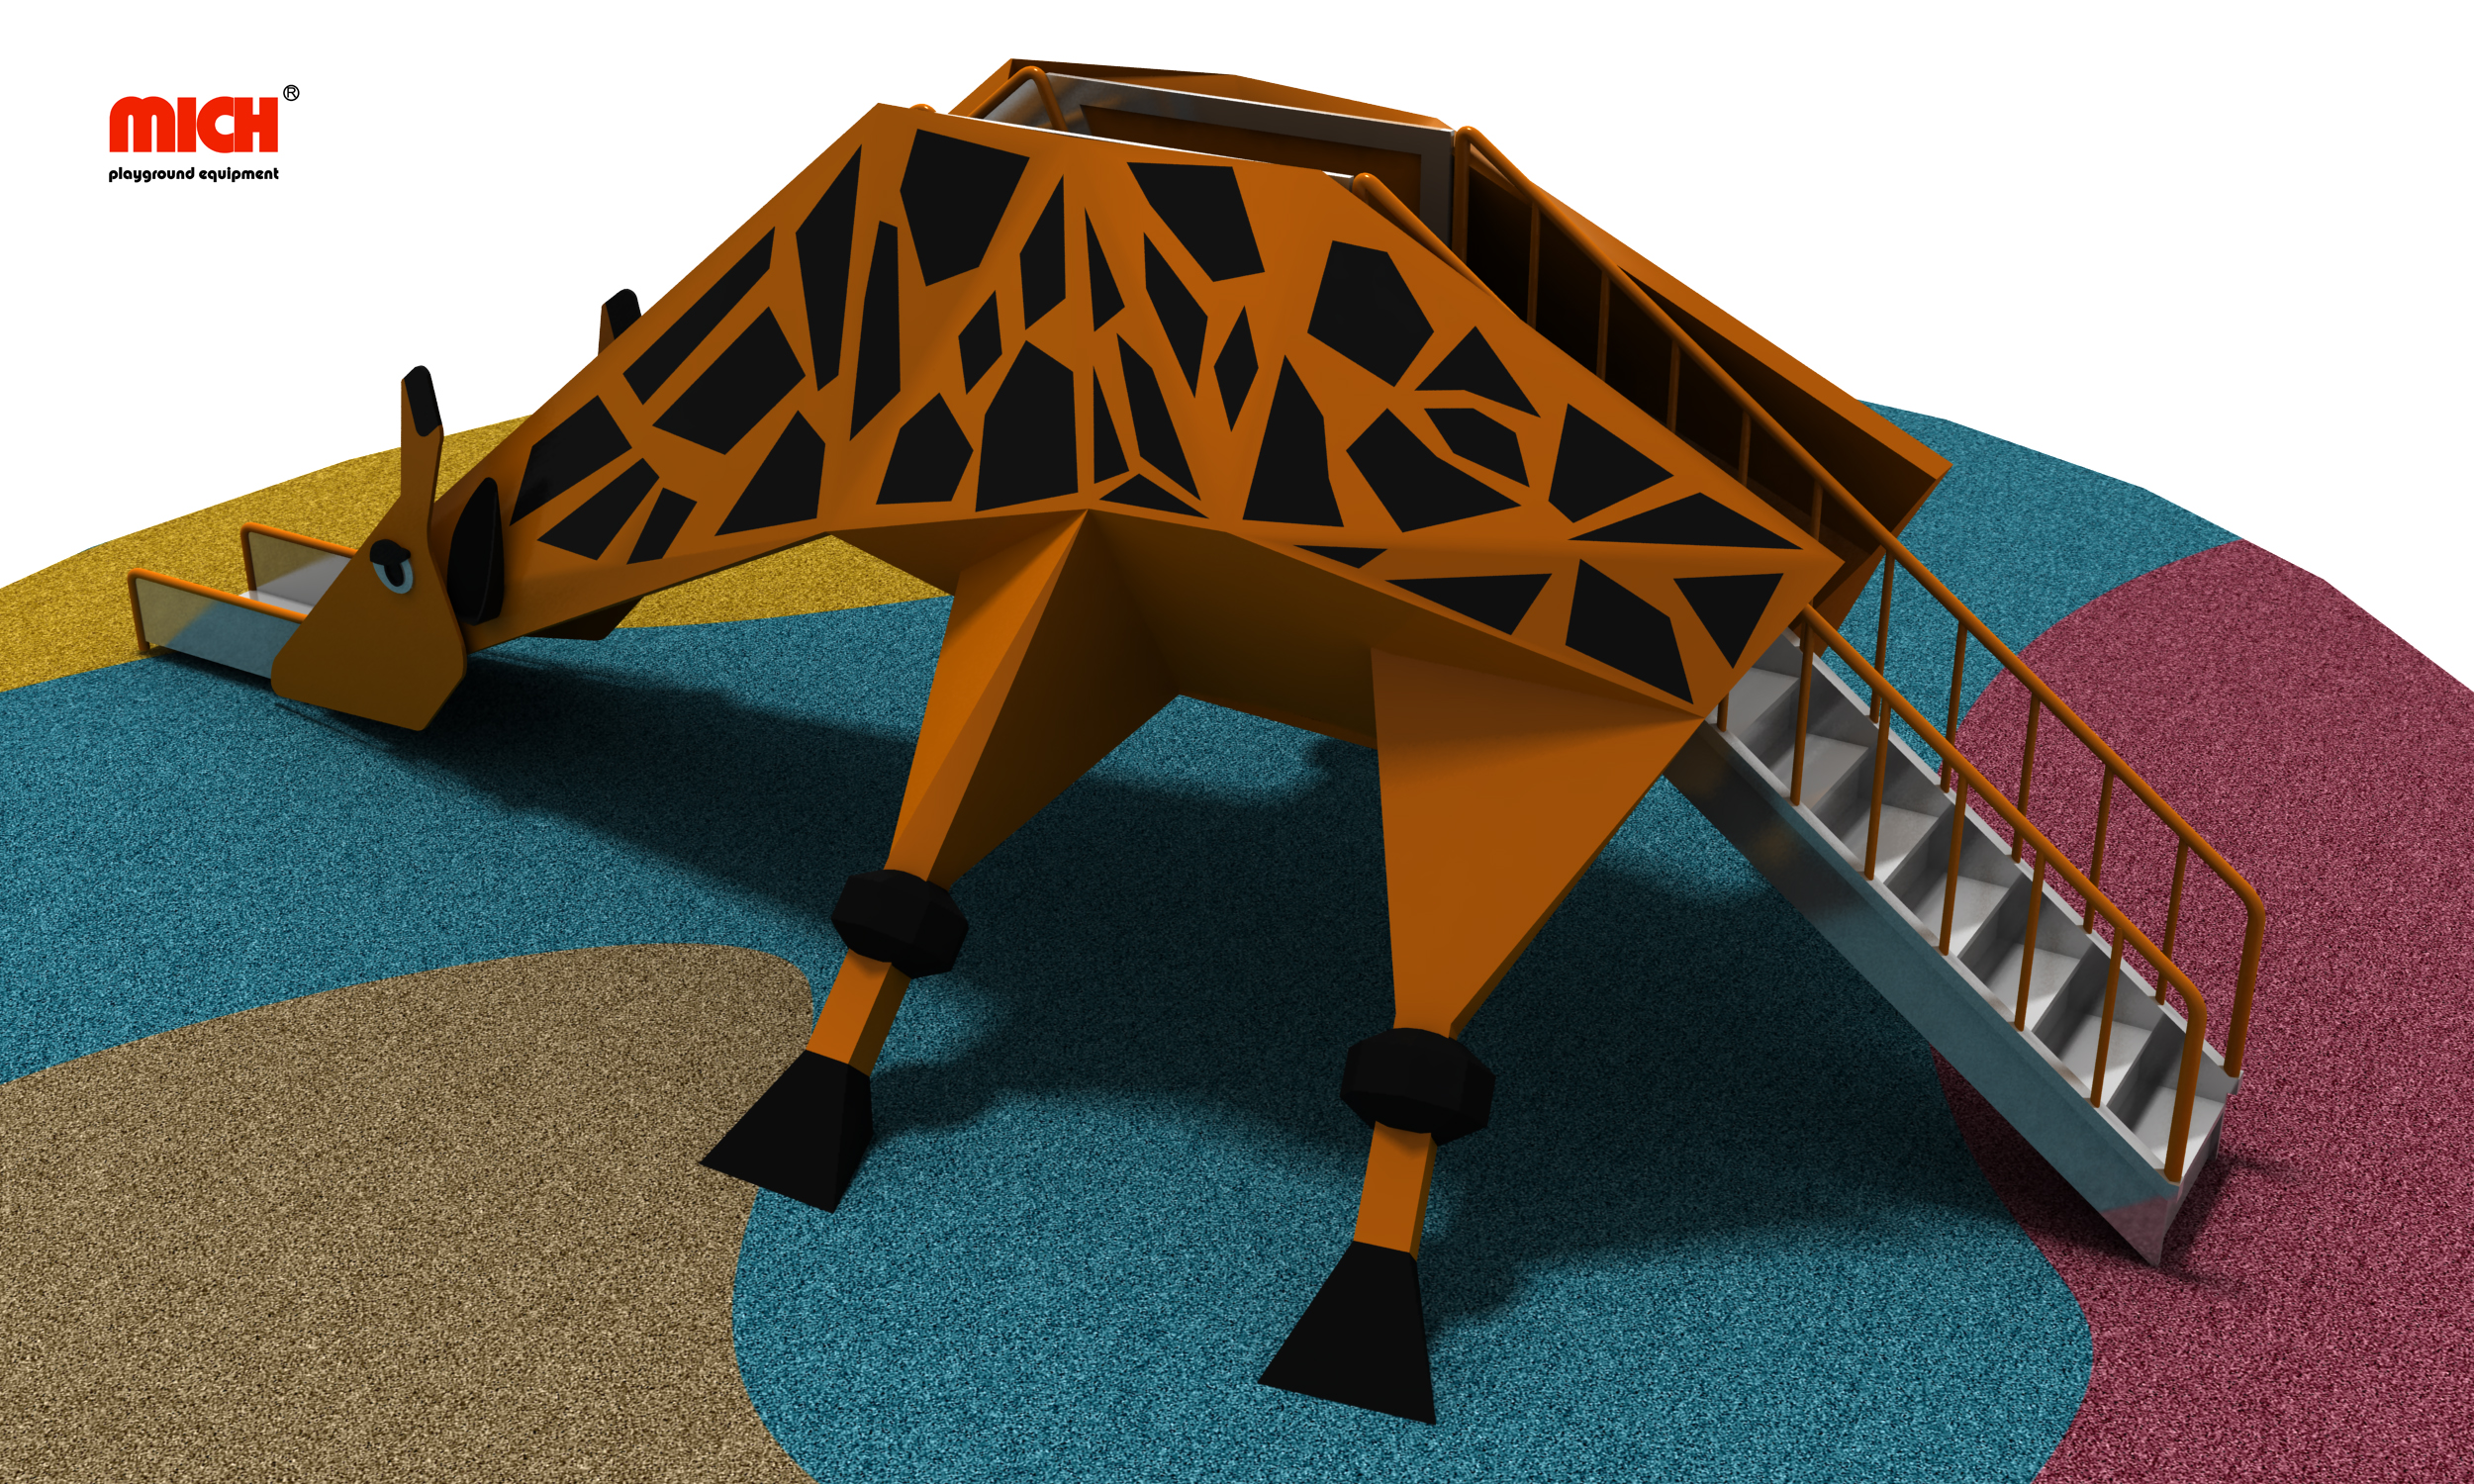 Slides de aço inoxidável de girafa ao ar livre com escada